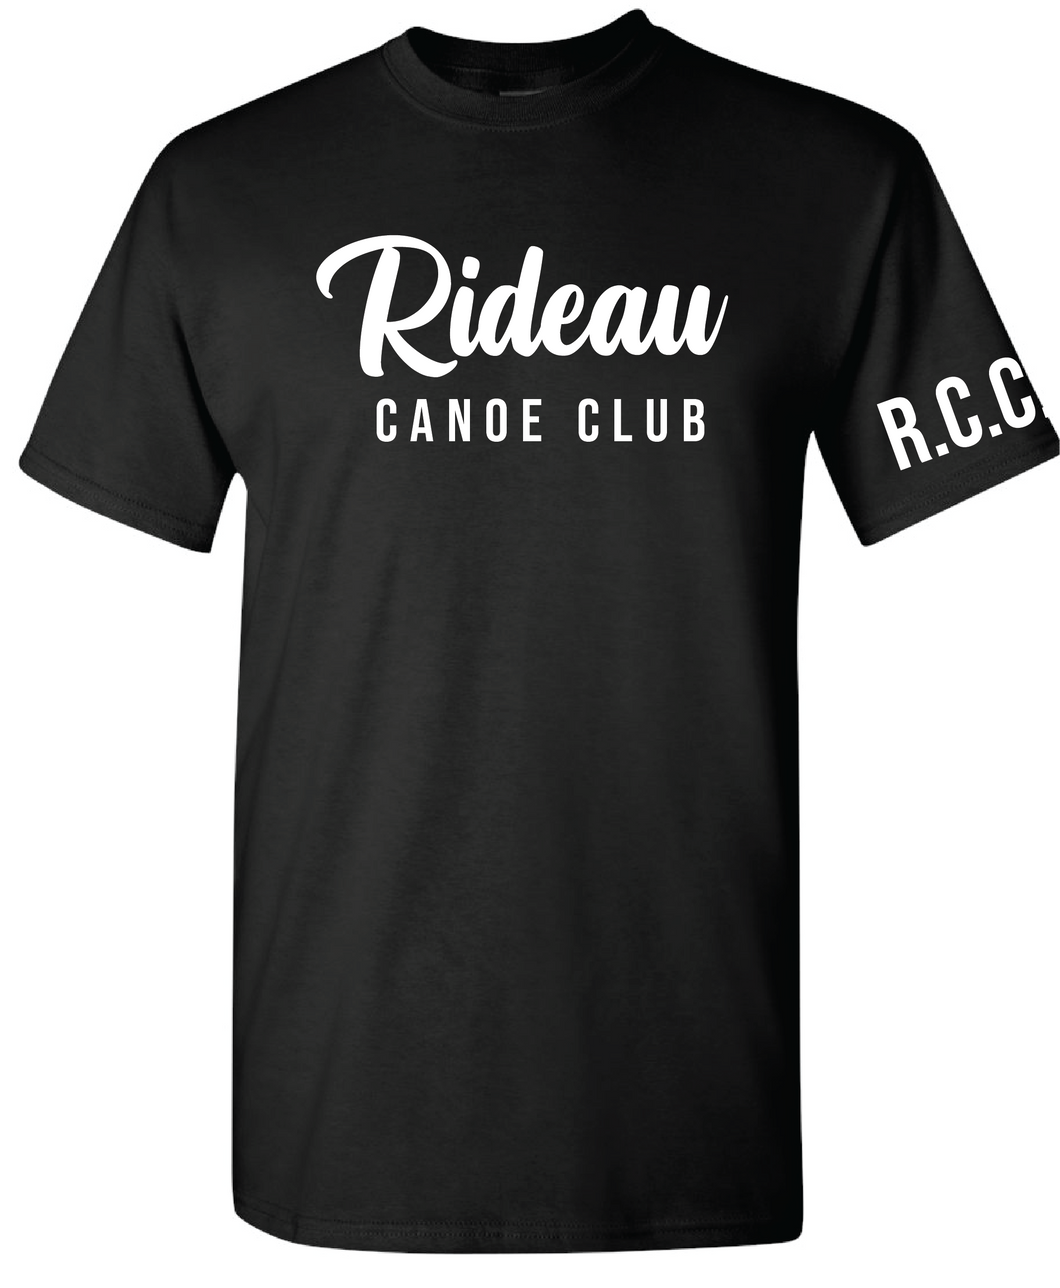 Rideau Canoe Club - Cotton T-Shirt w/ script